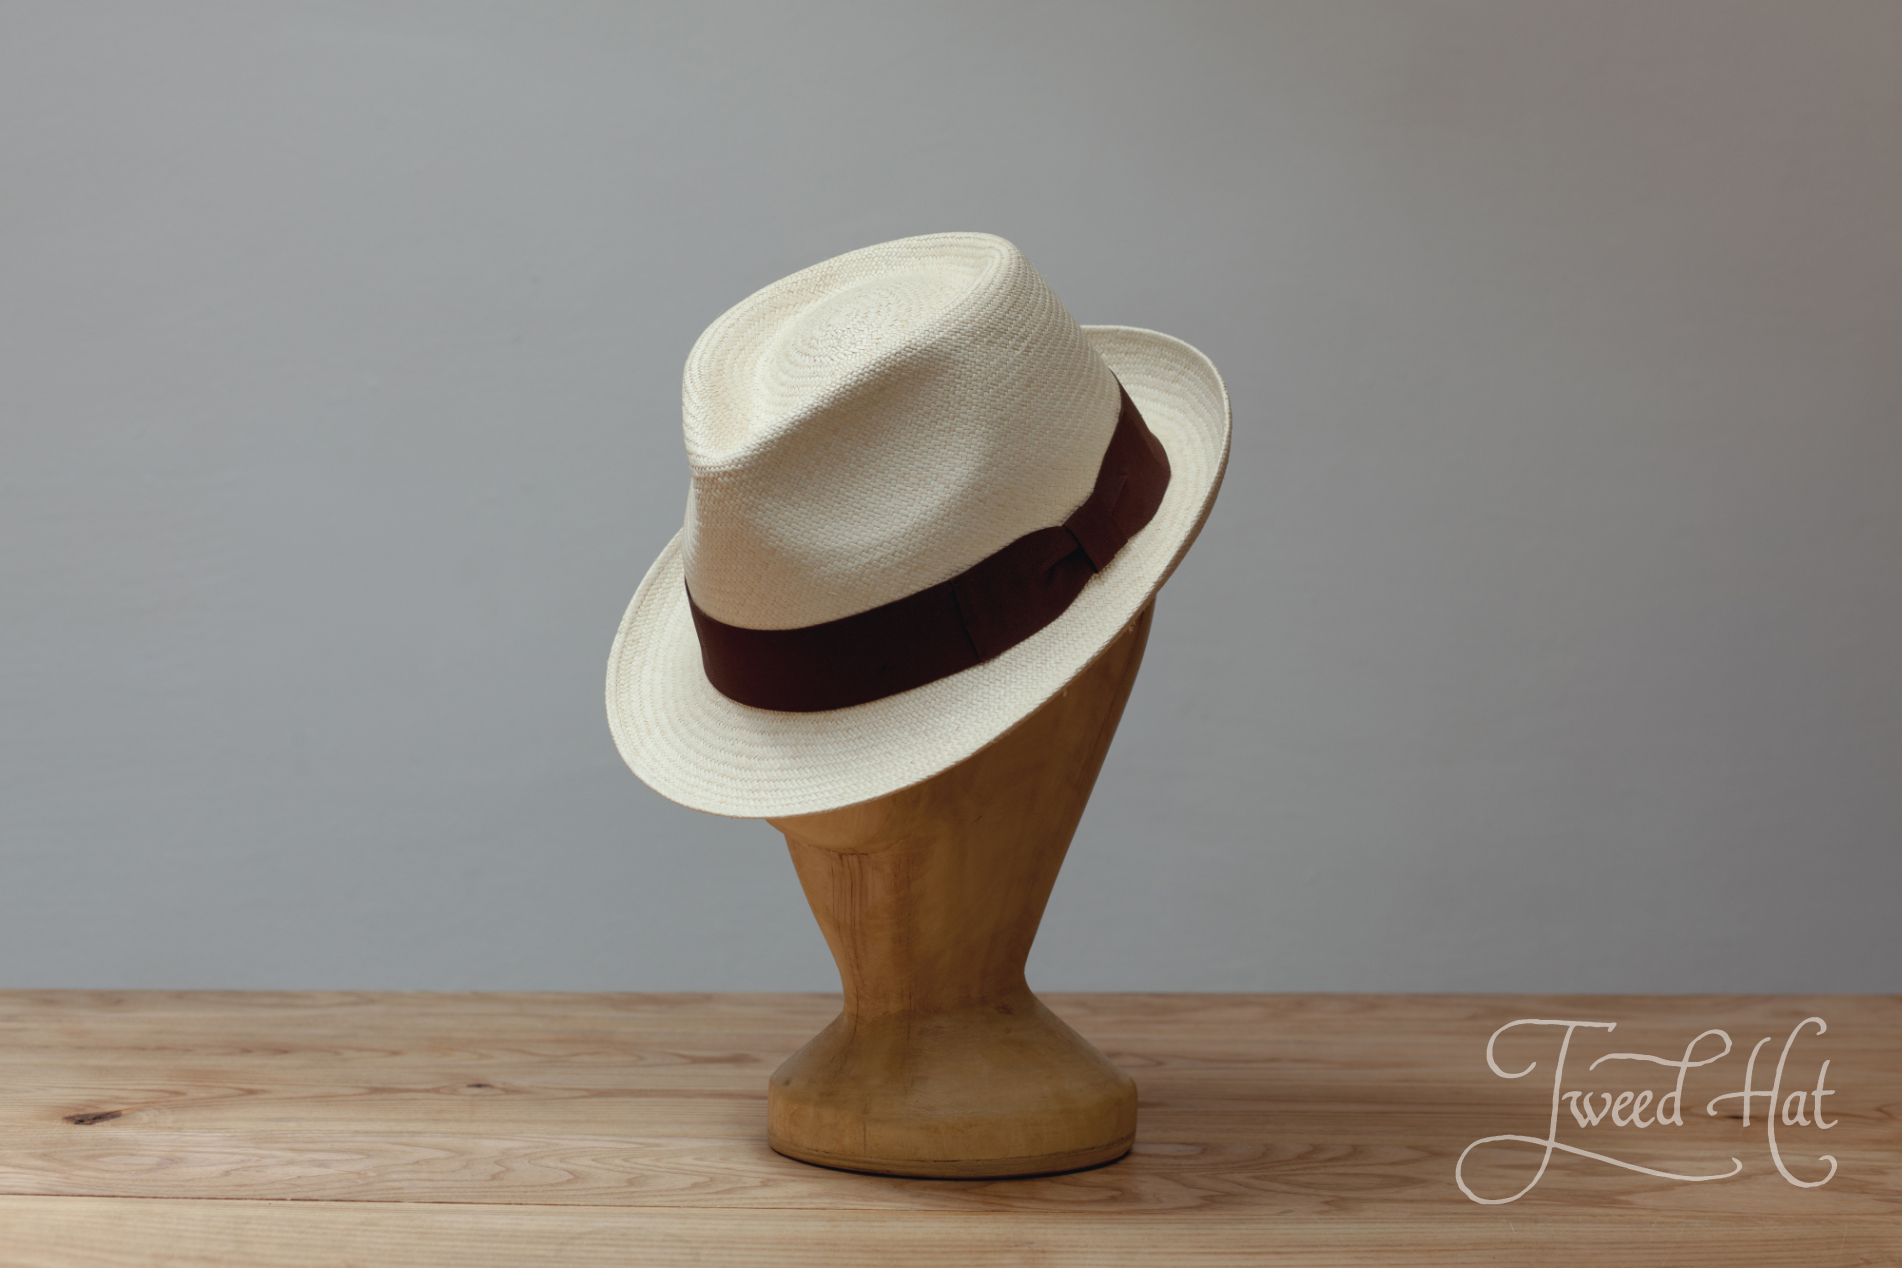 Panama Straw Hat | Gambler Hat | Basino Hat | Kudastore Small